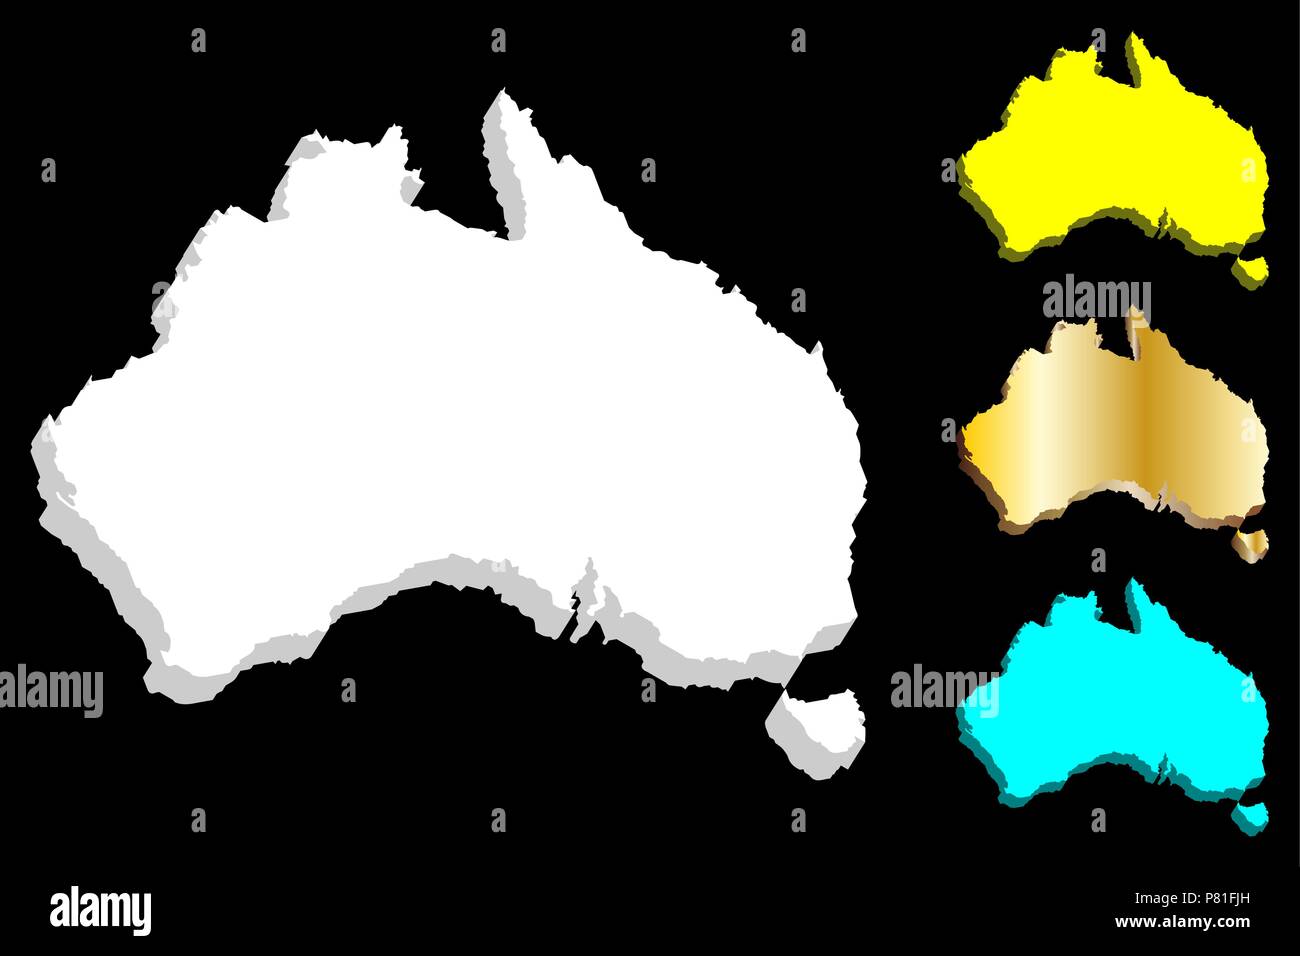 3D de la carte de l'Australie (Commonwealth d'Australie) continent - blanc, or, bleu et jaune - vector illustration Illustration de Vecteur